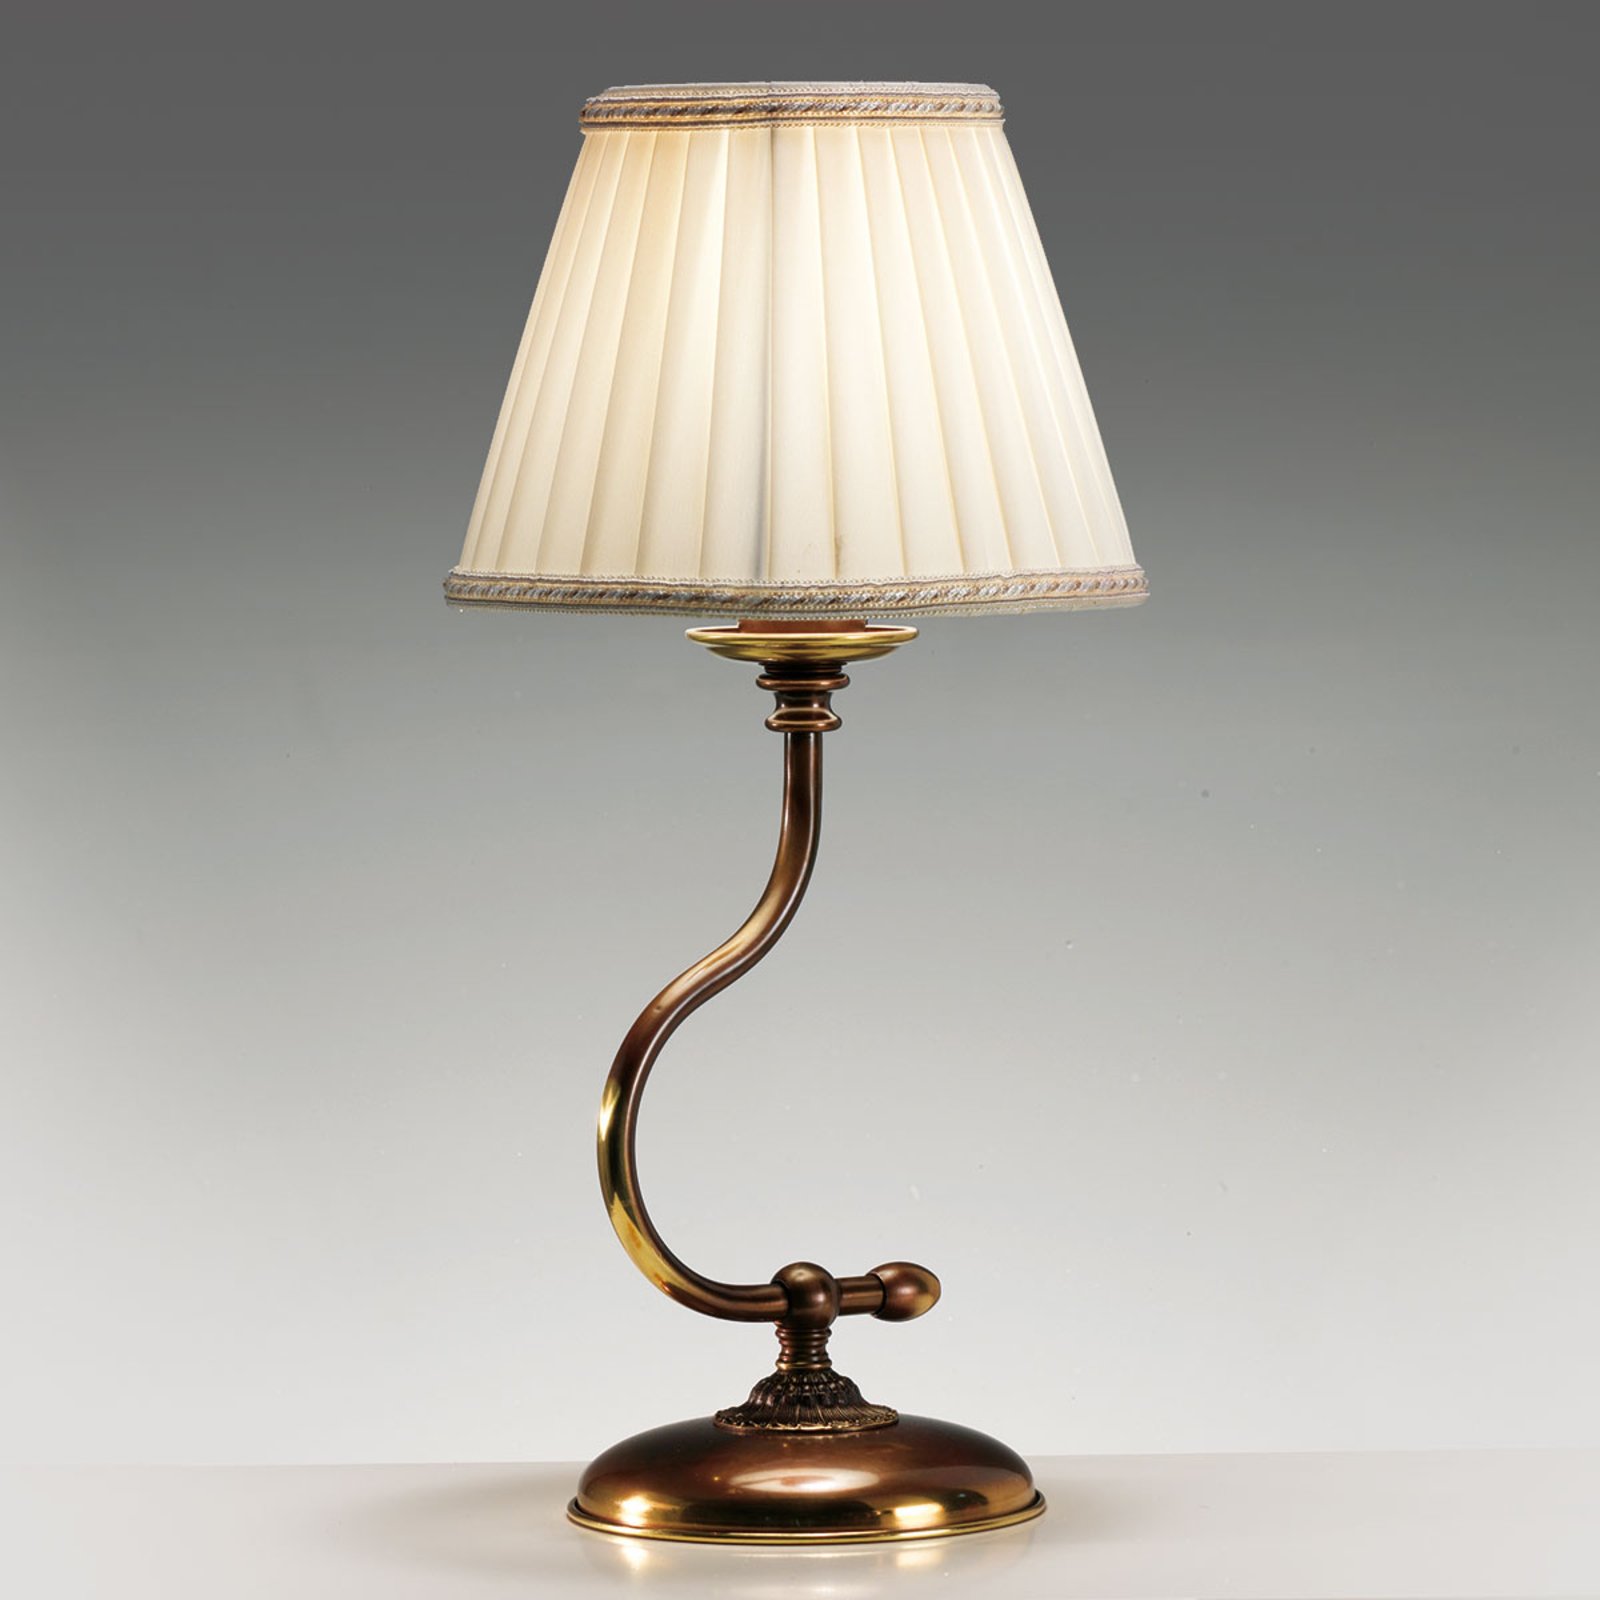 Classic bordlampe med buet fot